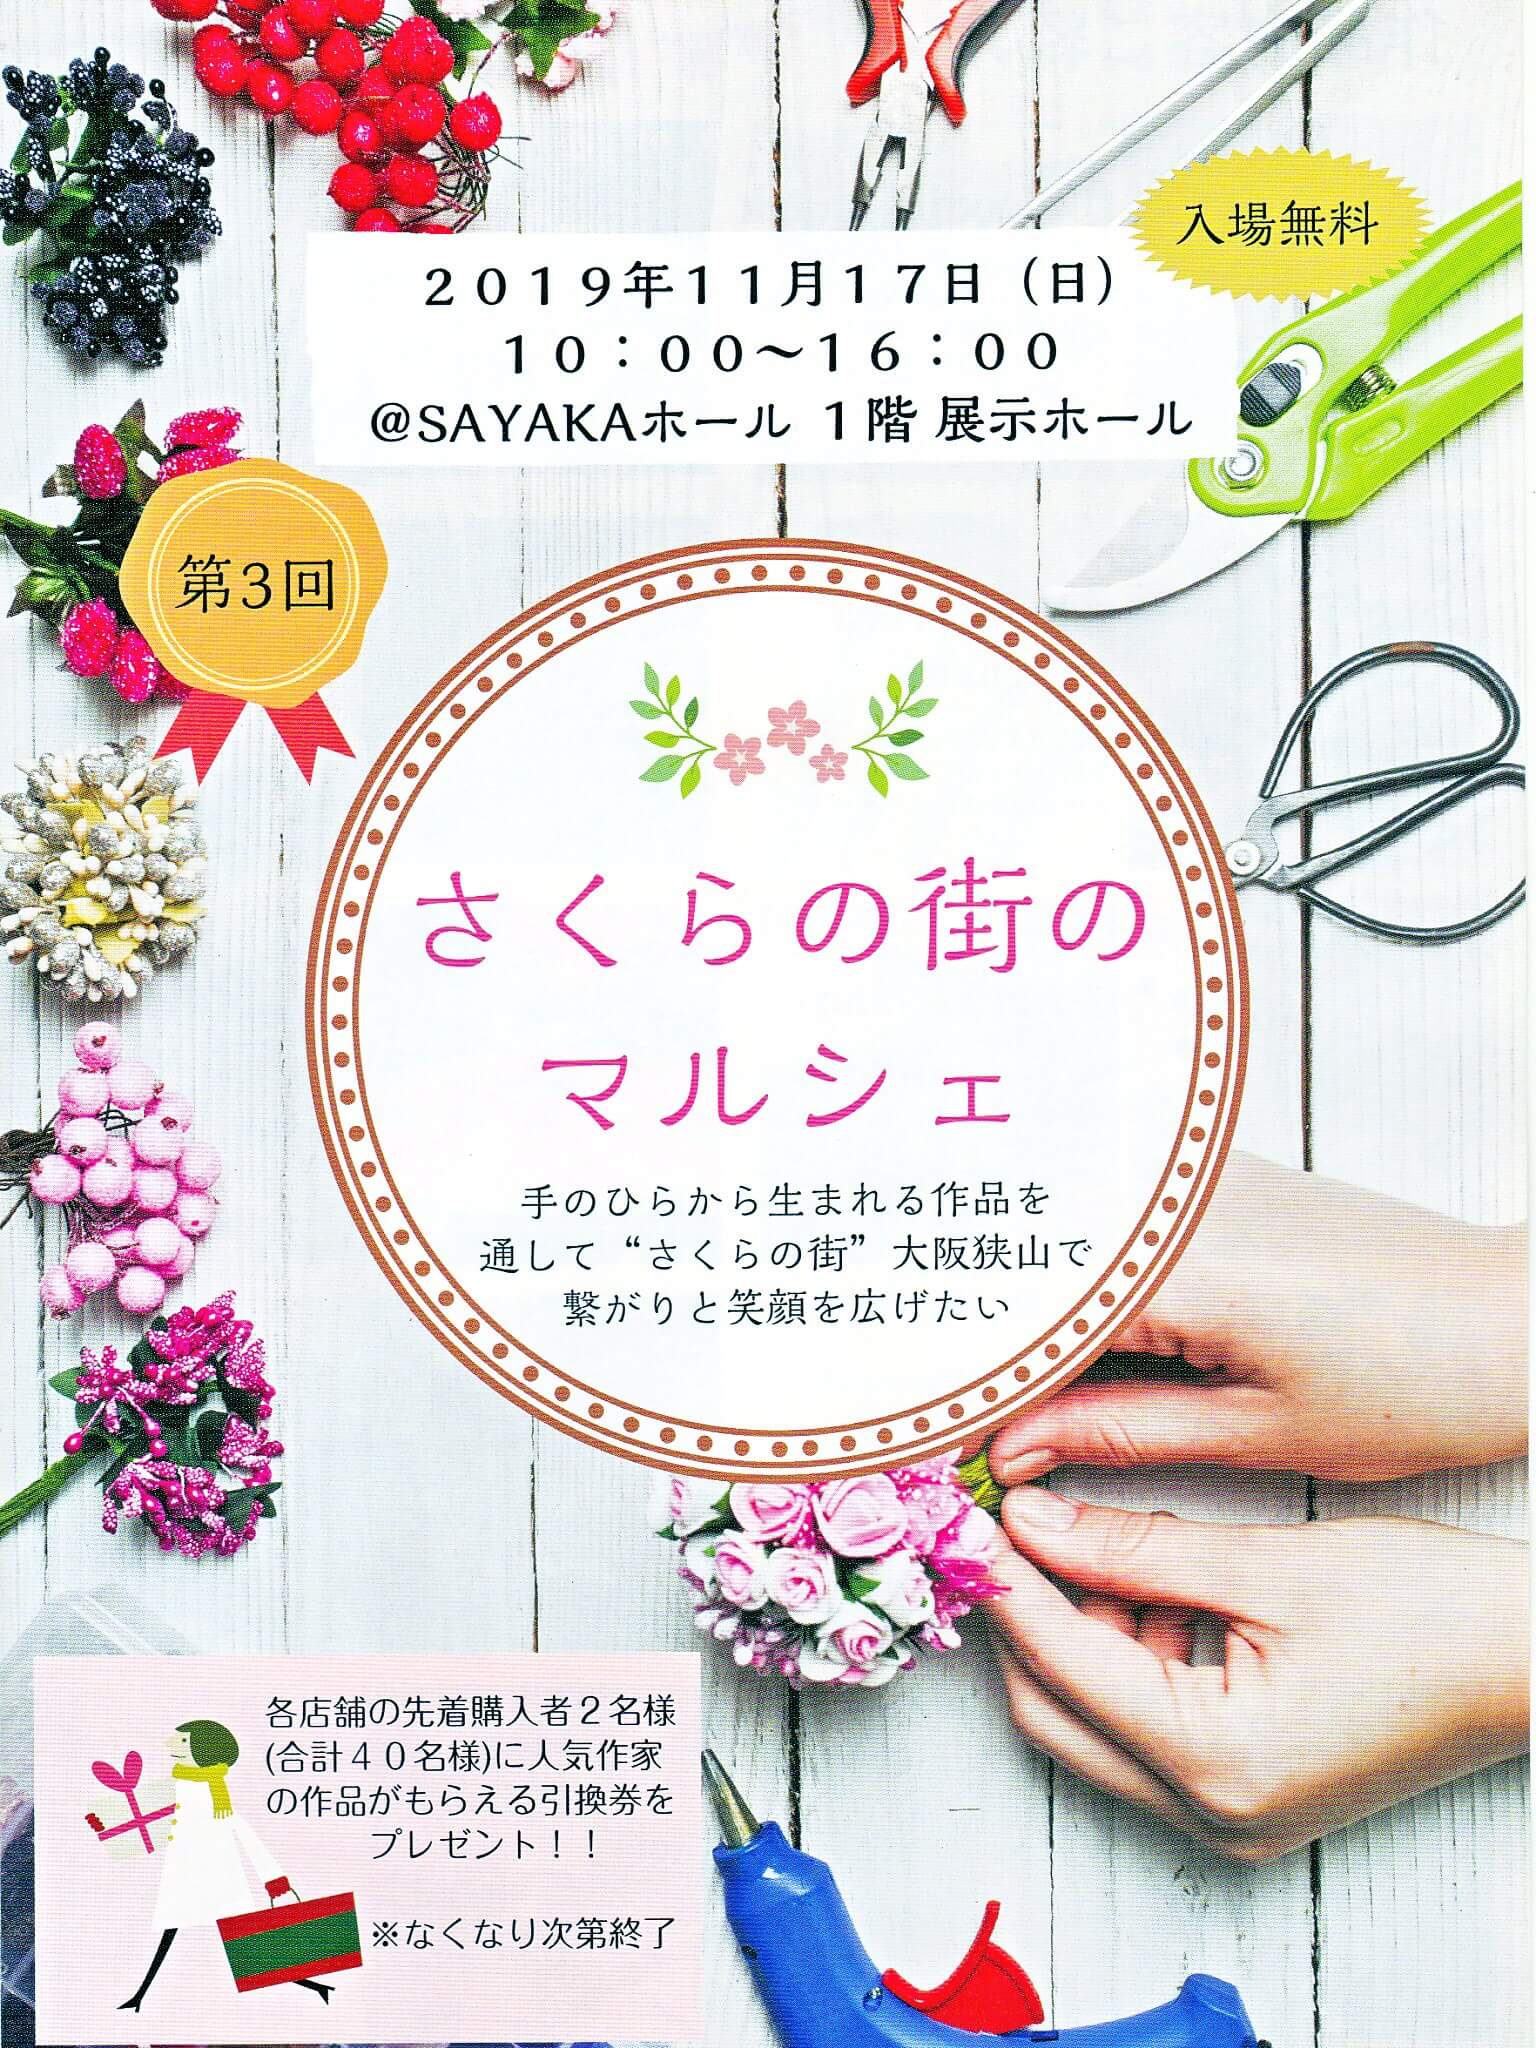 【大阪狭山市で手づくり市】「第3回さくらの街のマルシェ」がSAYAKAホールで2019年11月17日に開催されます (3)